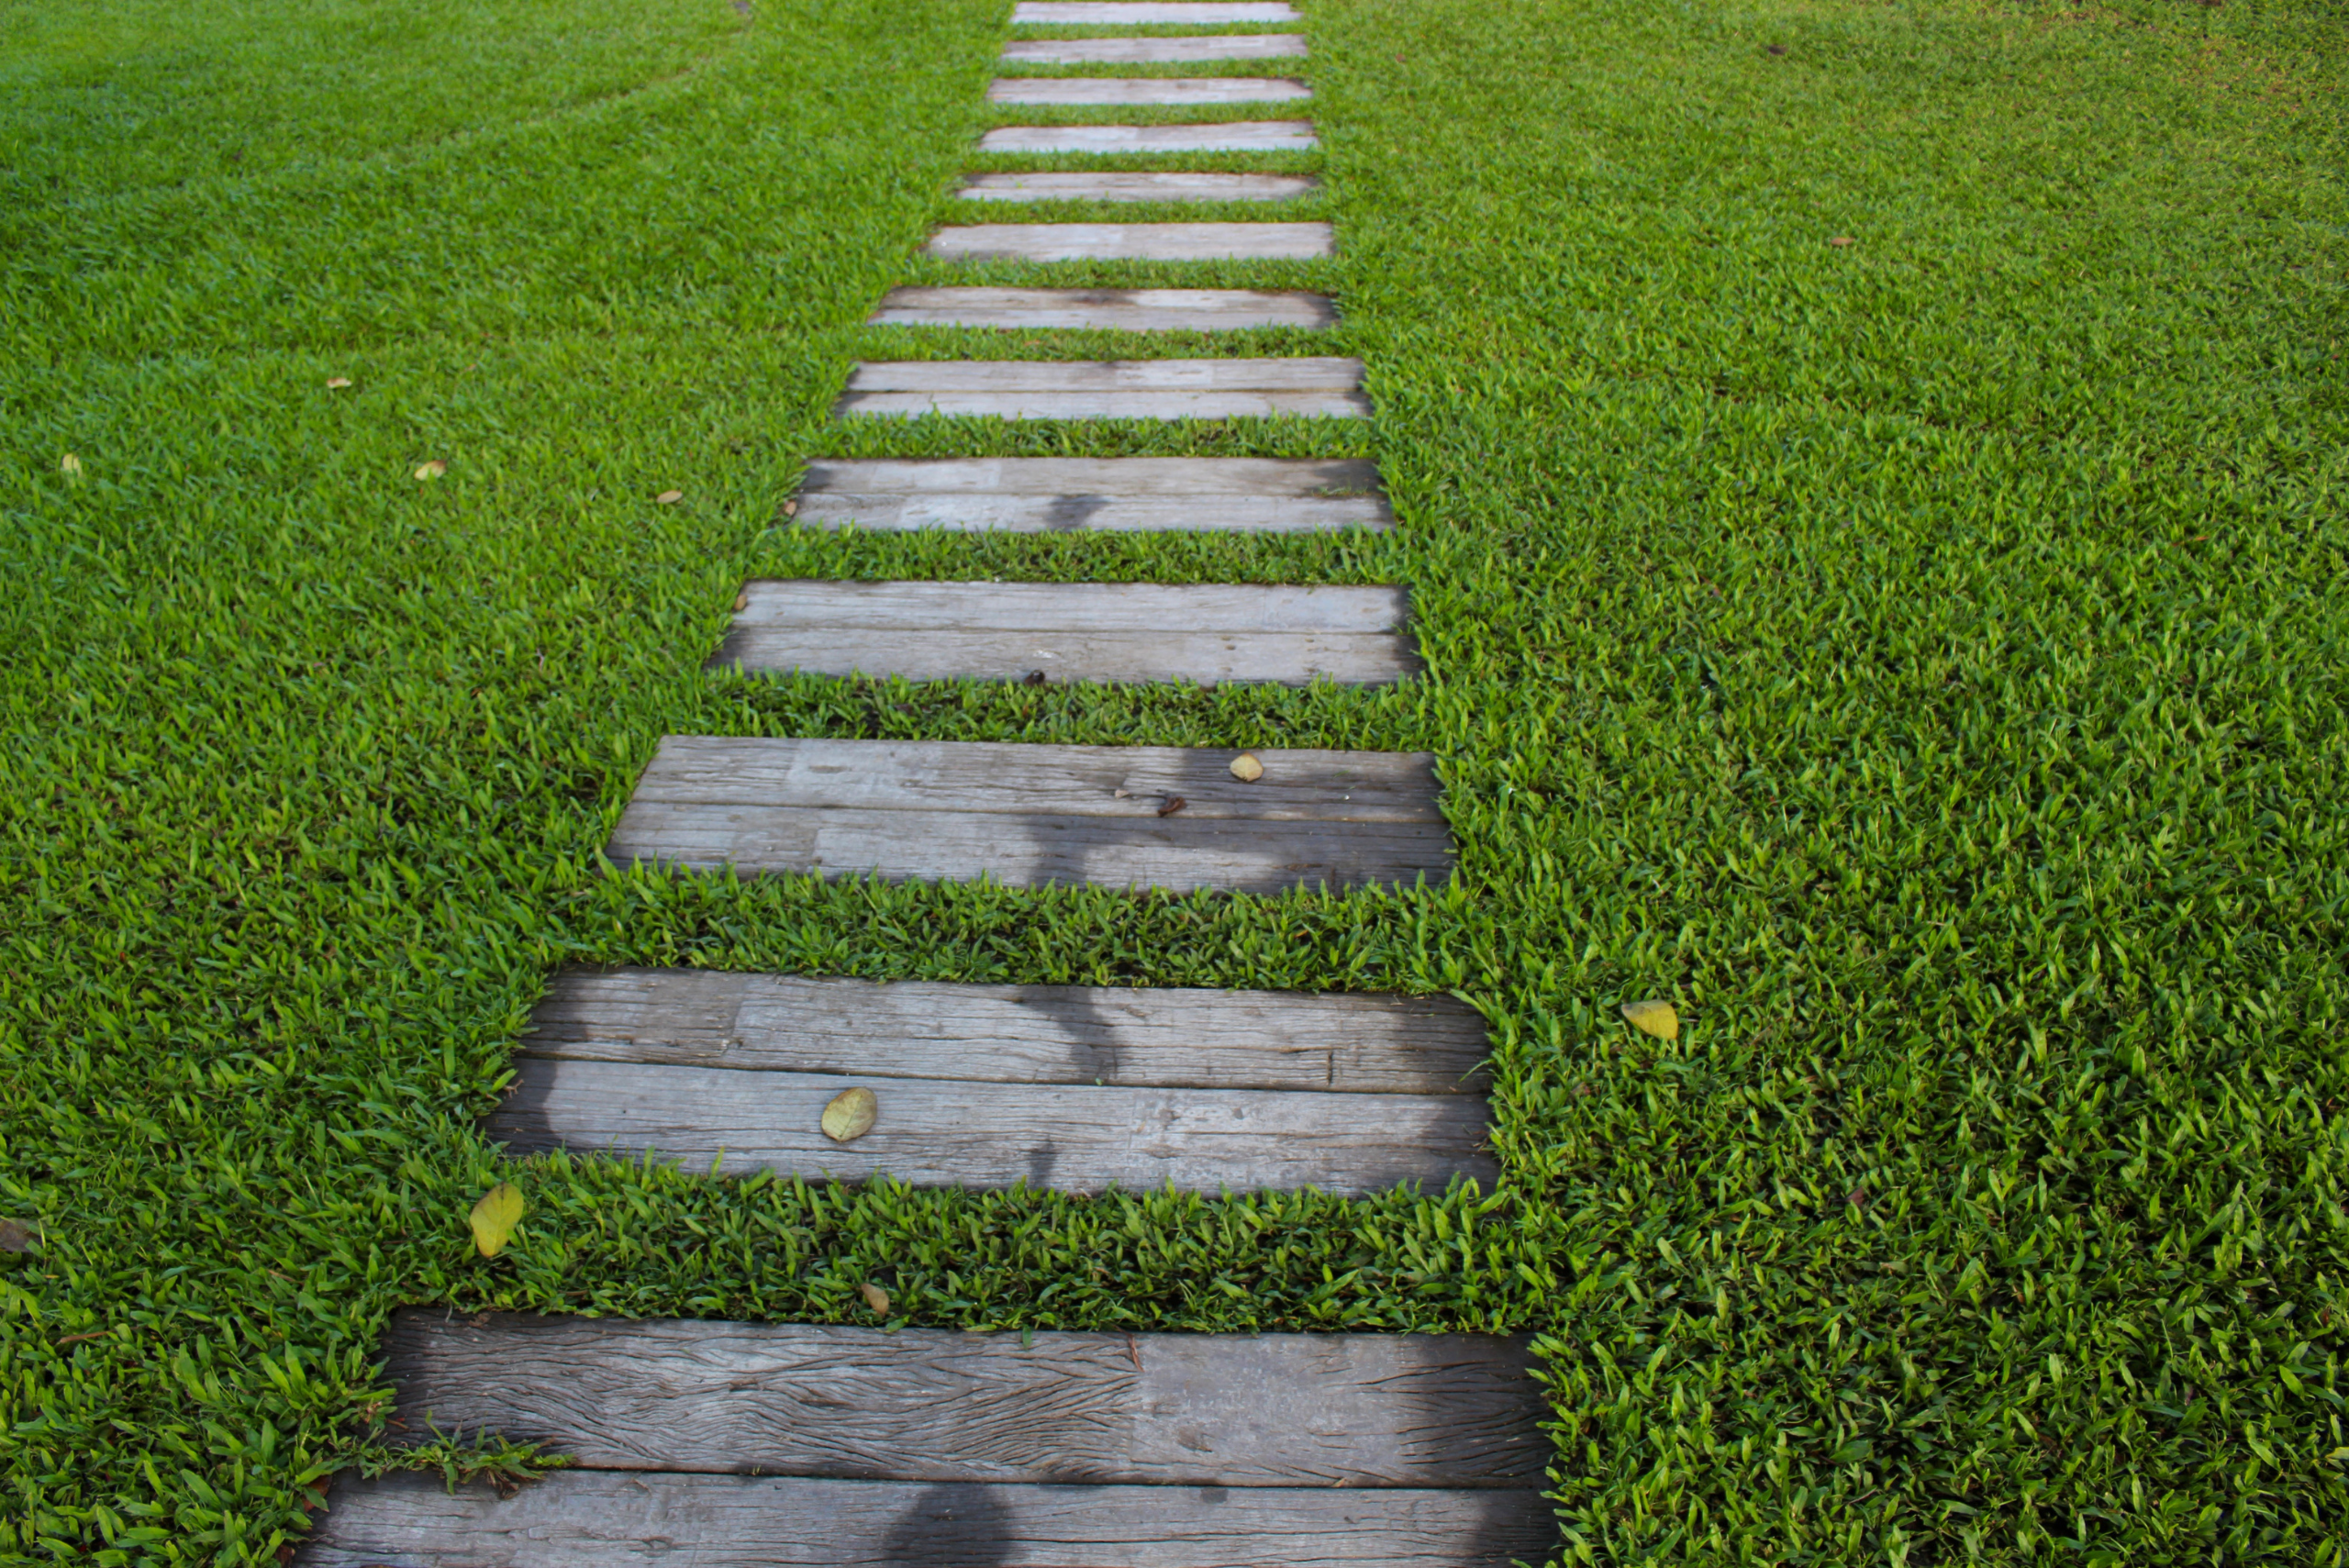 Wooden planks embedded in the ground around grass.